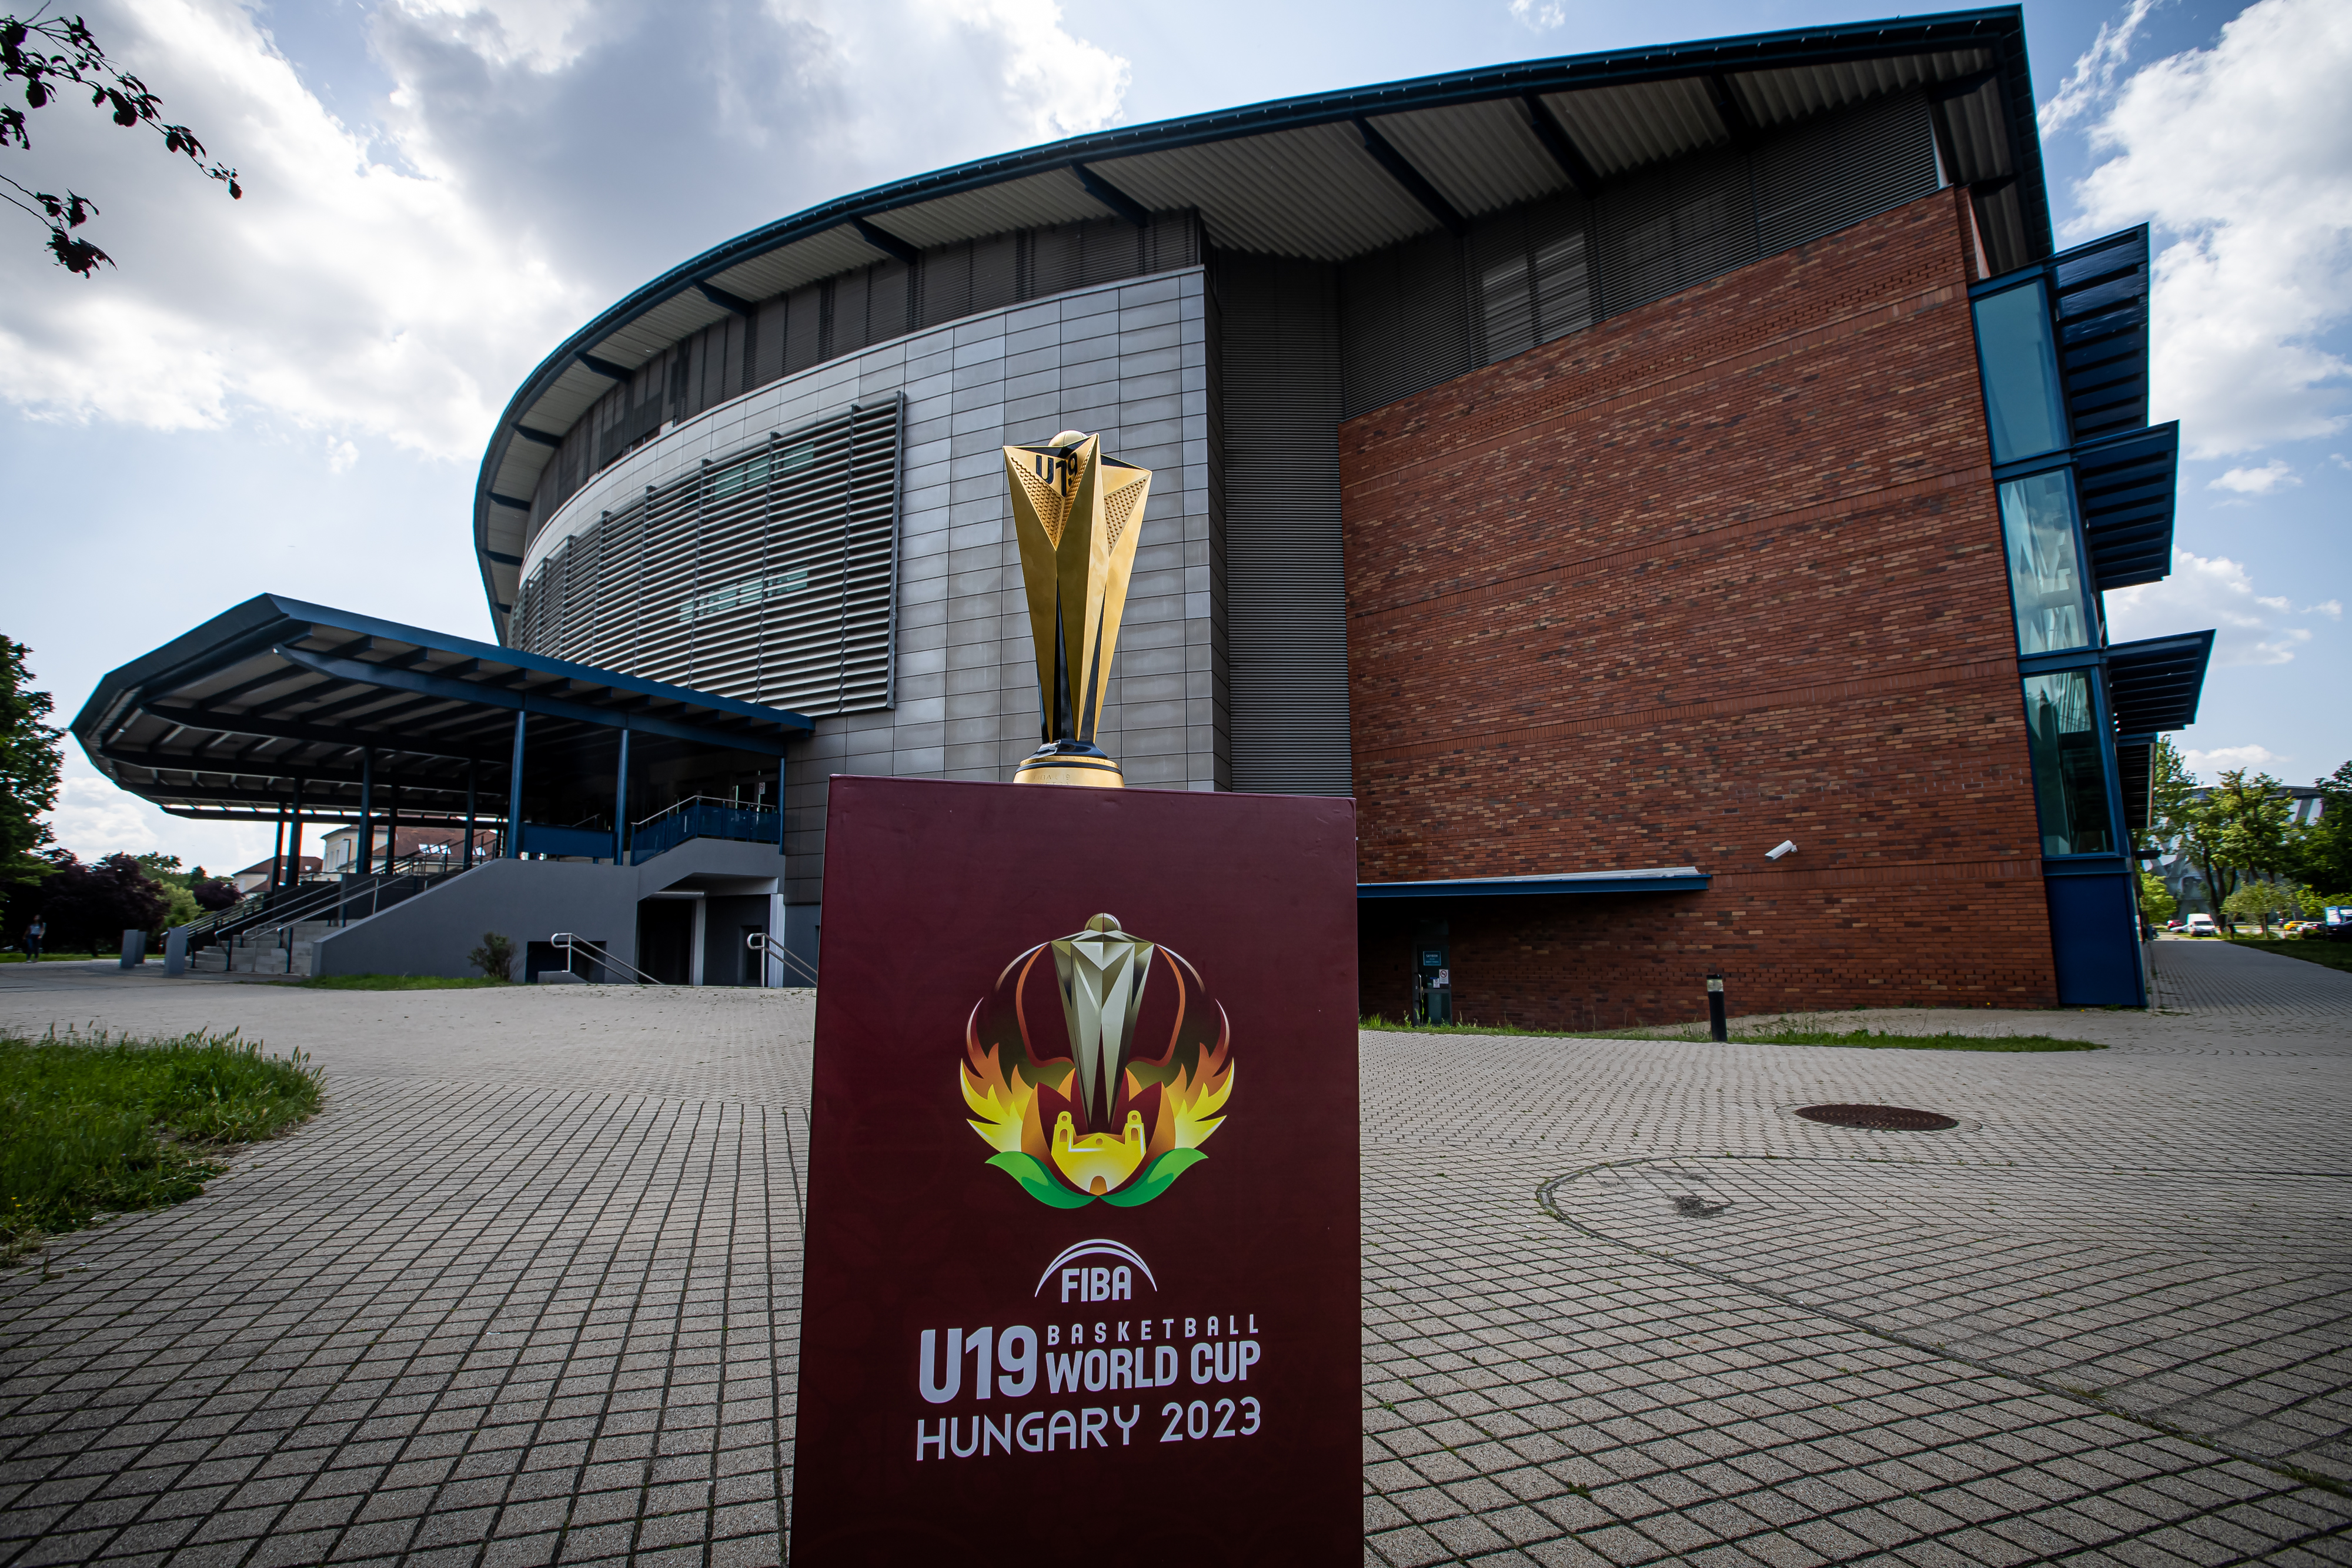 Megkezdődött a jegyértékesítés a debreceni U19-es világbajnokságra